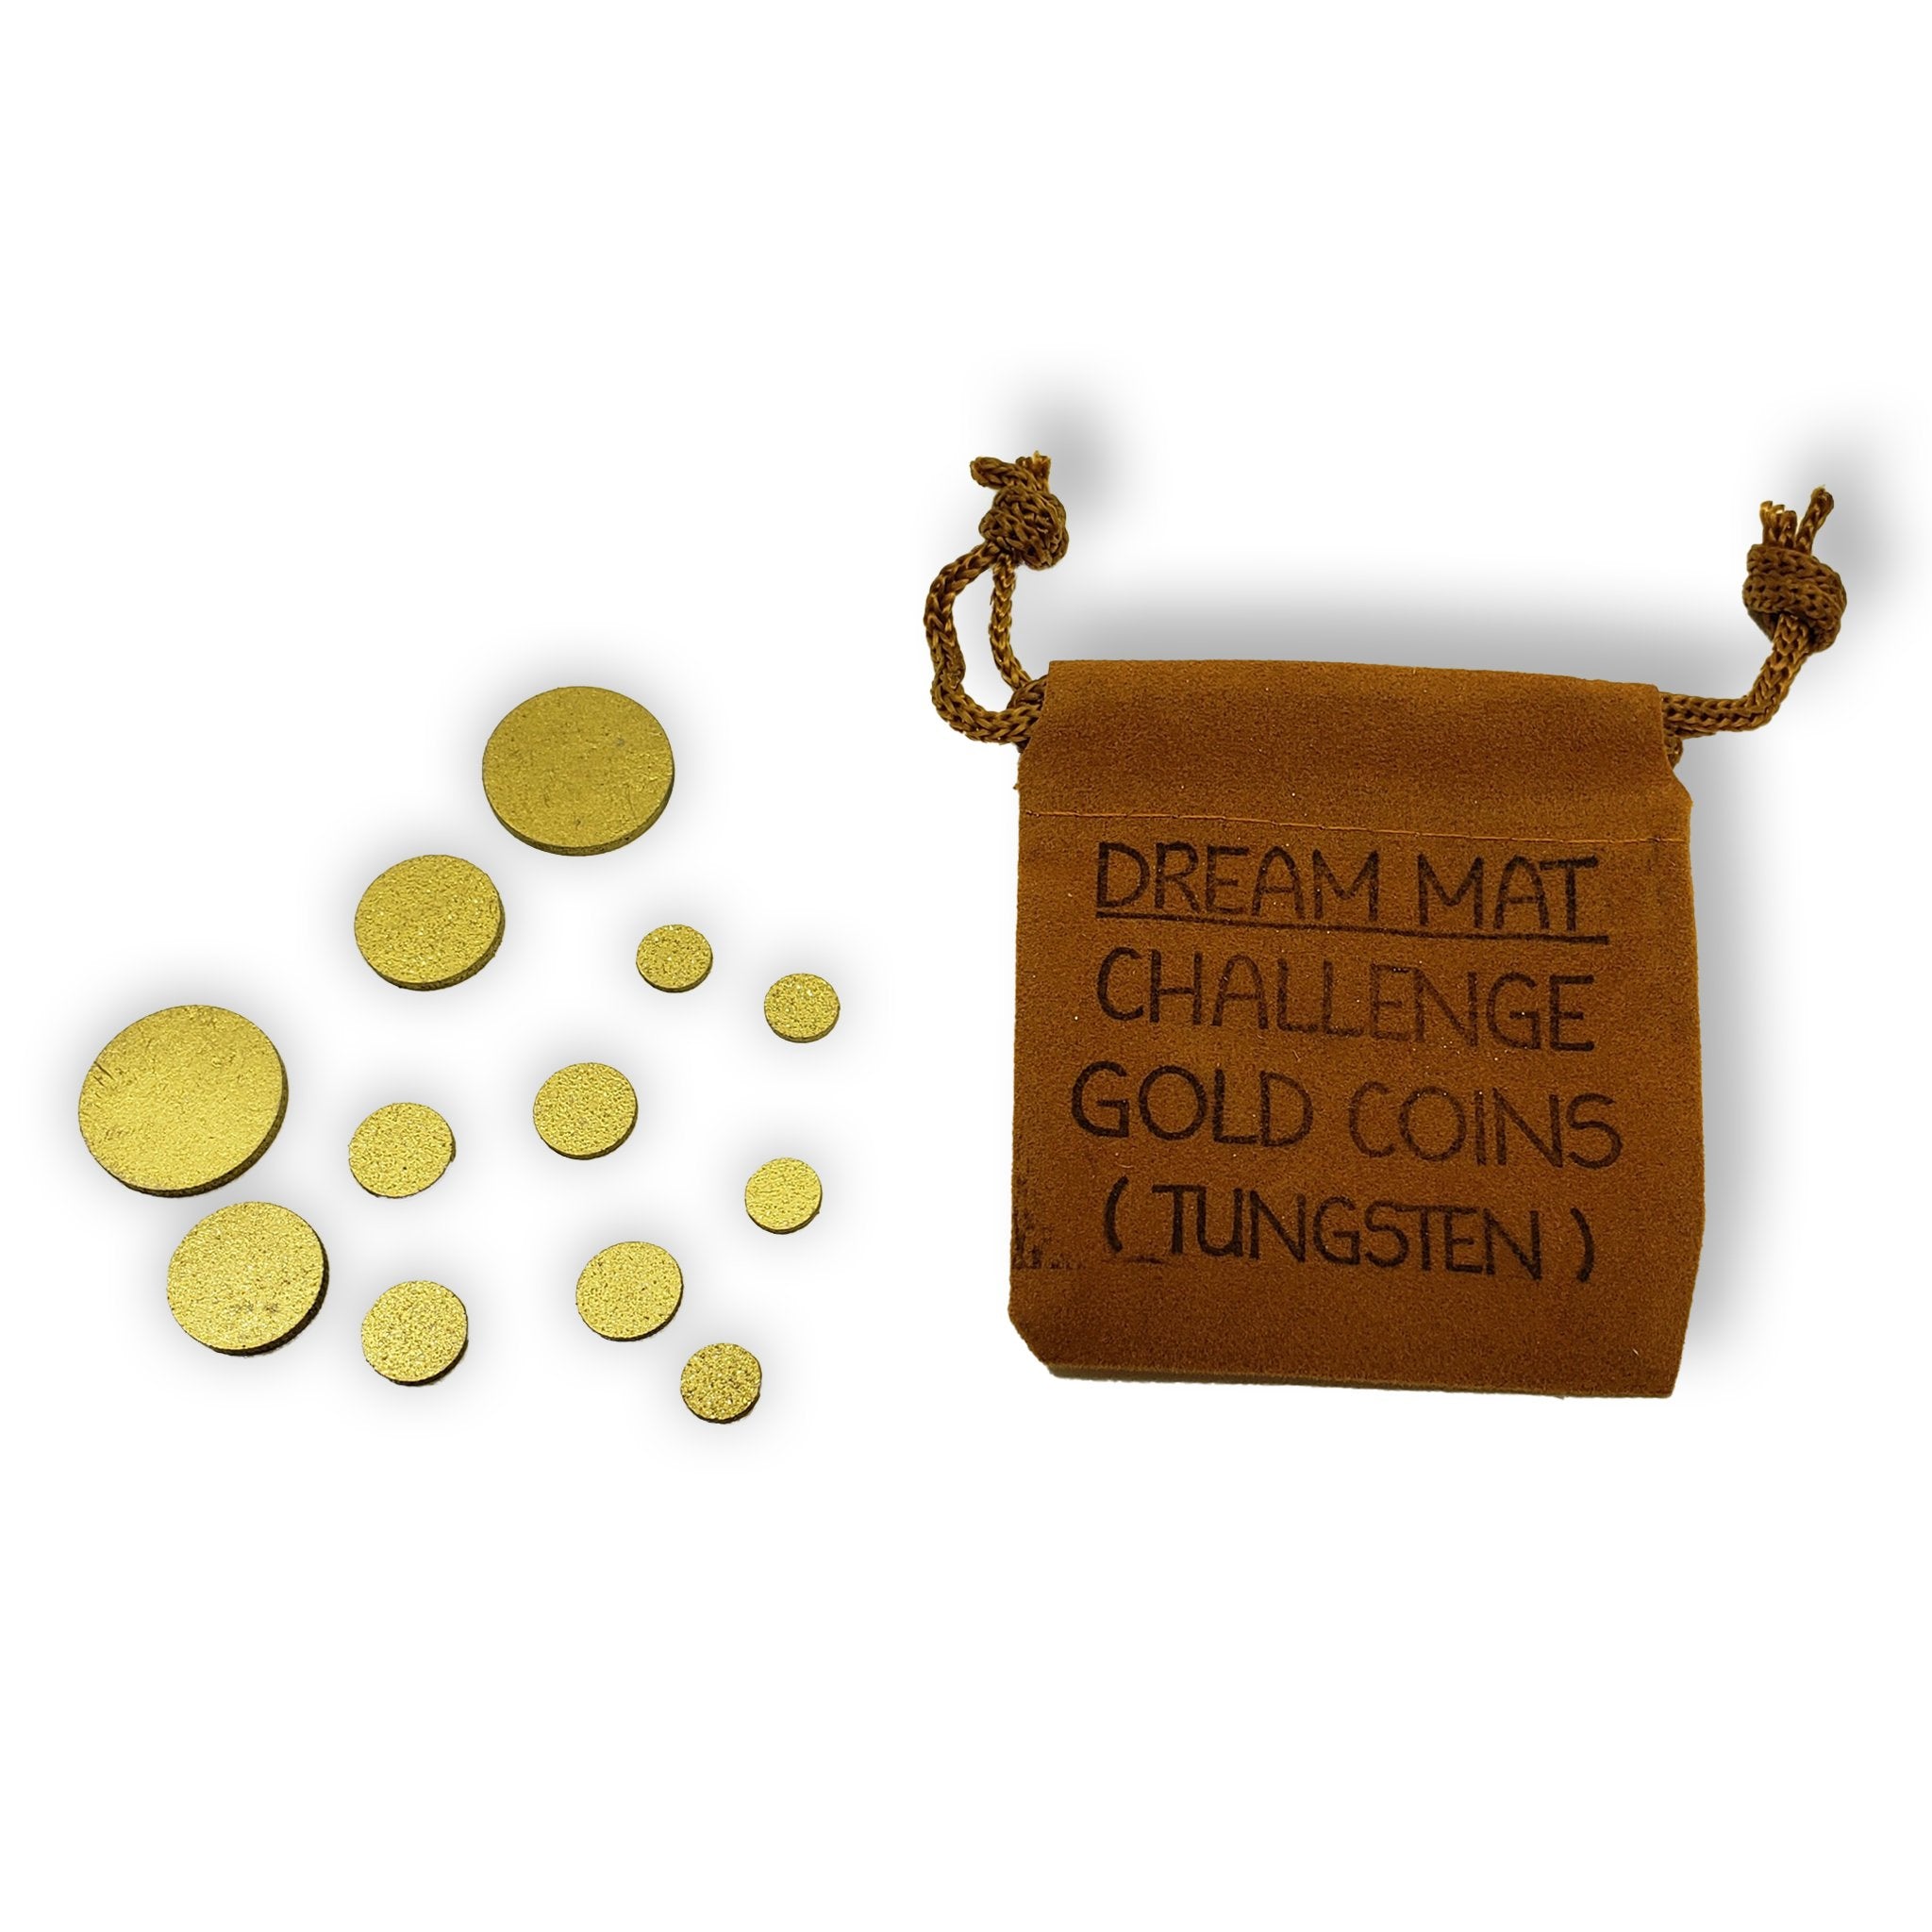 Dream Mat Challenge Coins (Tungsten) - Prospectors Dream